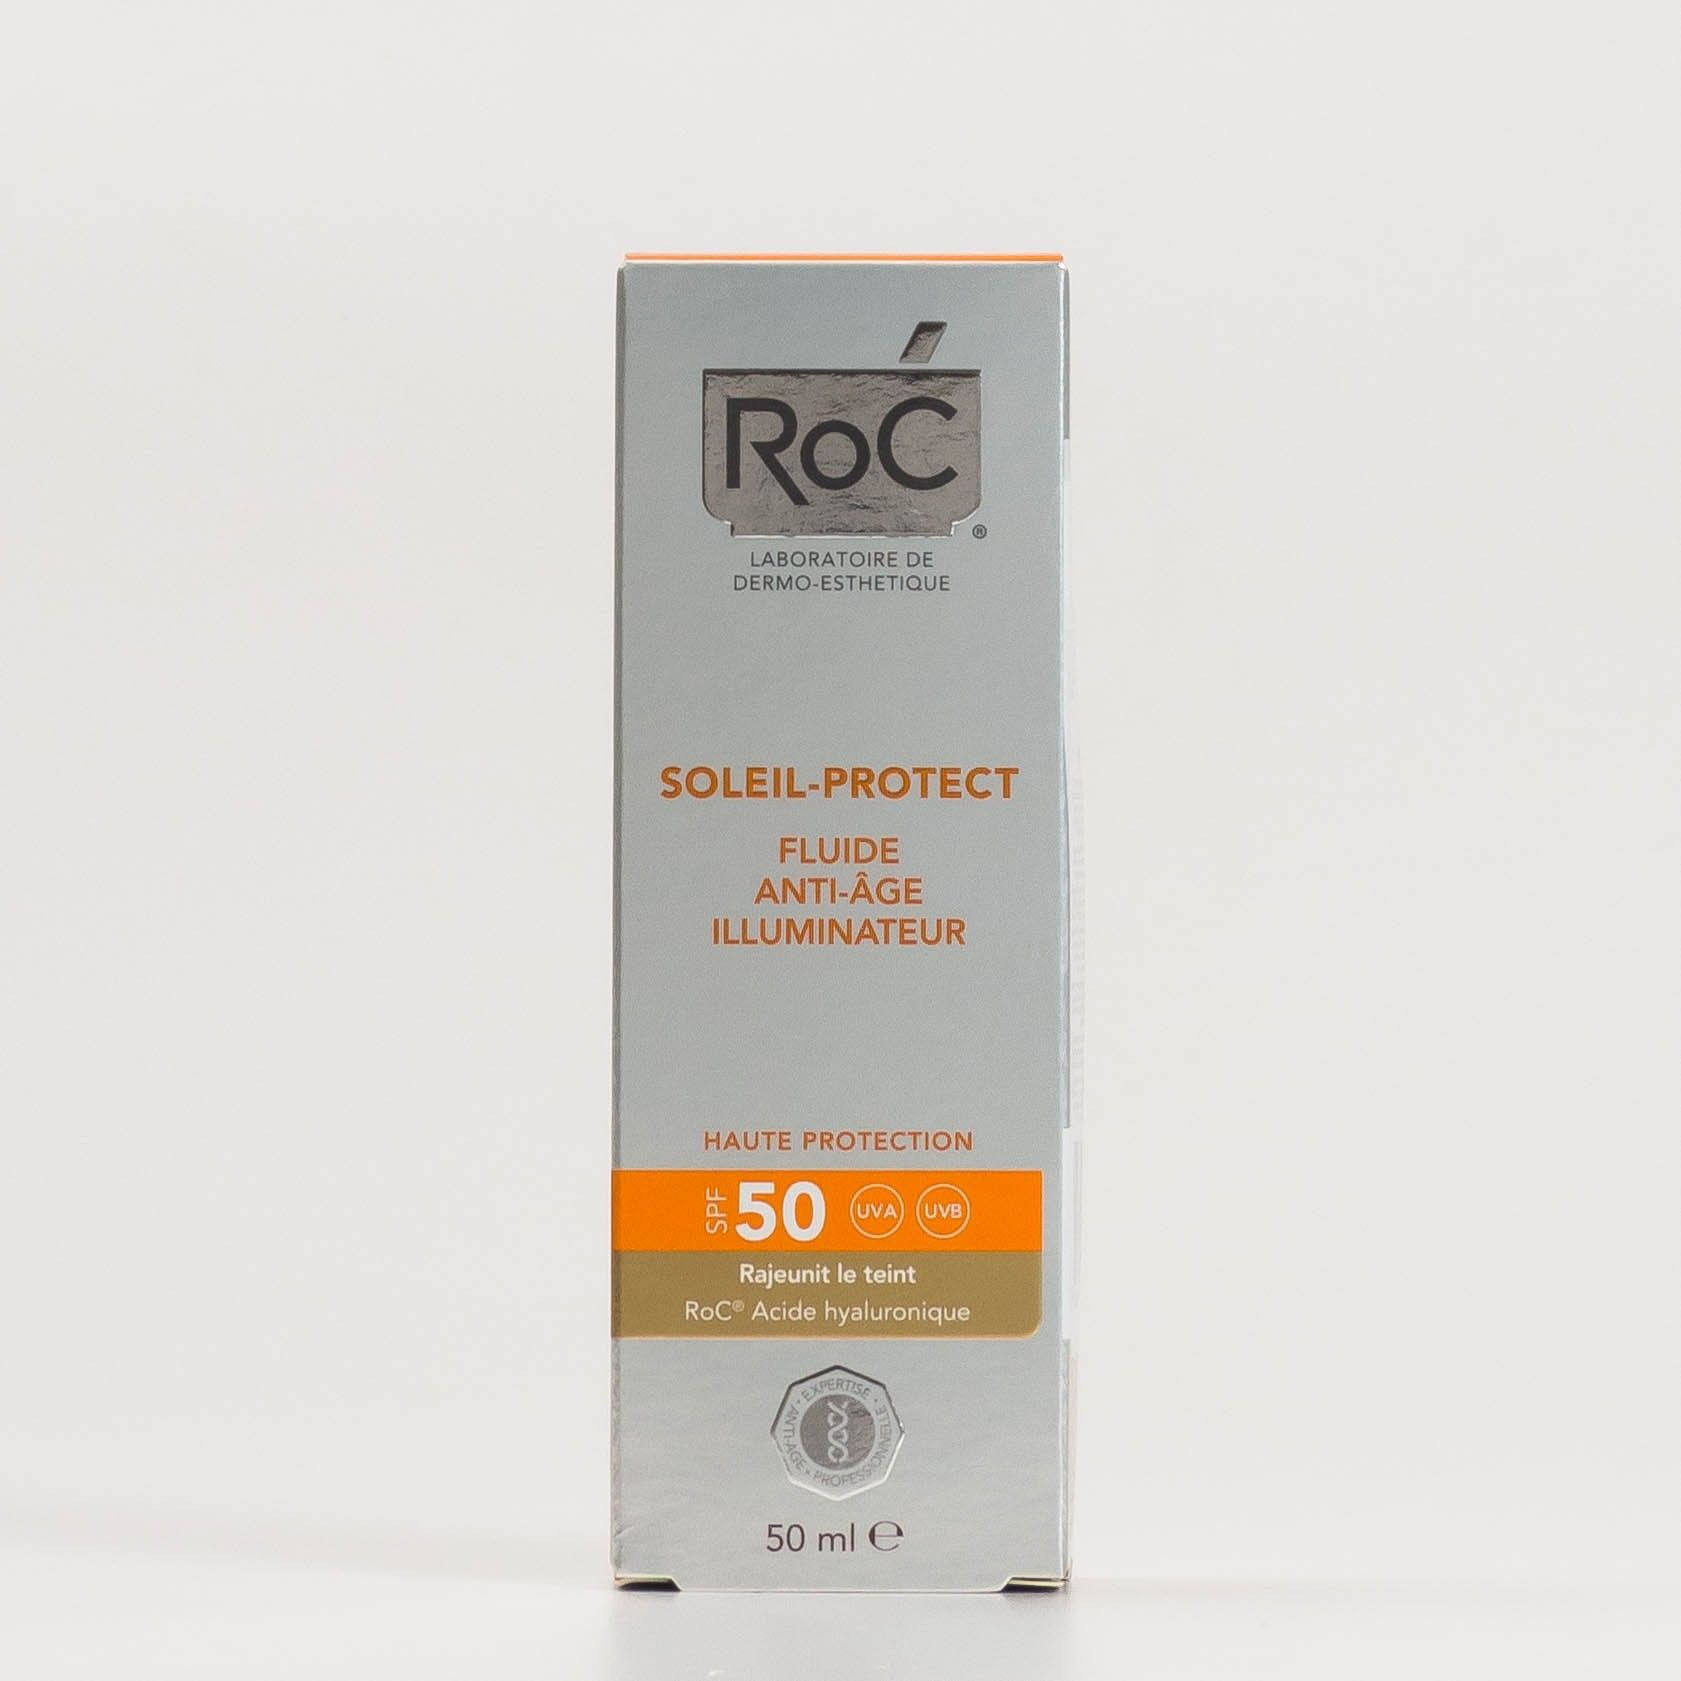 Roc Soleil-Protect Fluido Iluminador Anti-Envelhecimento FPS50+, 50ml